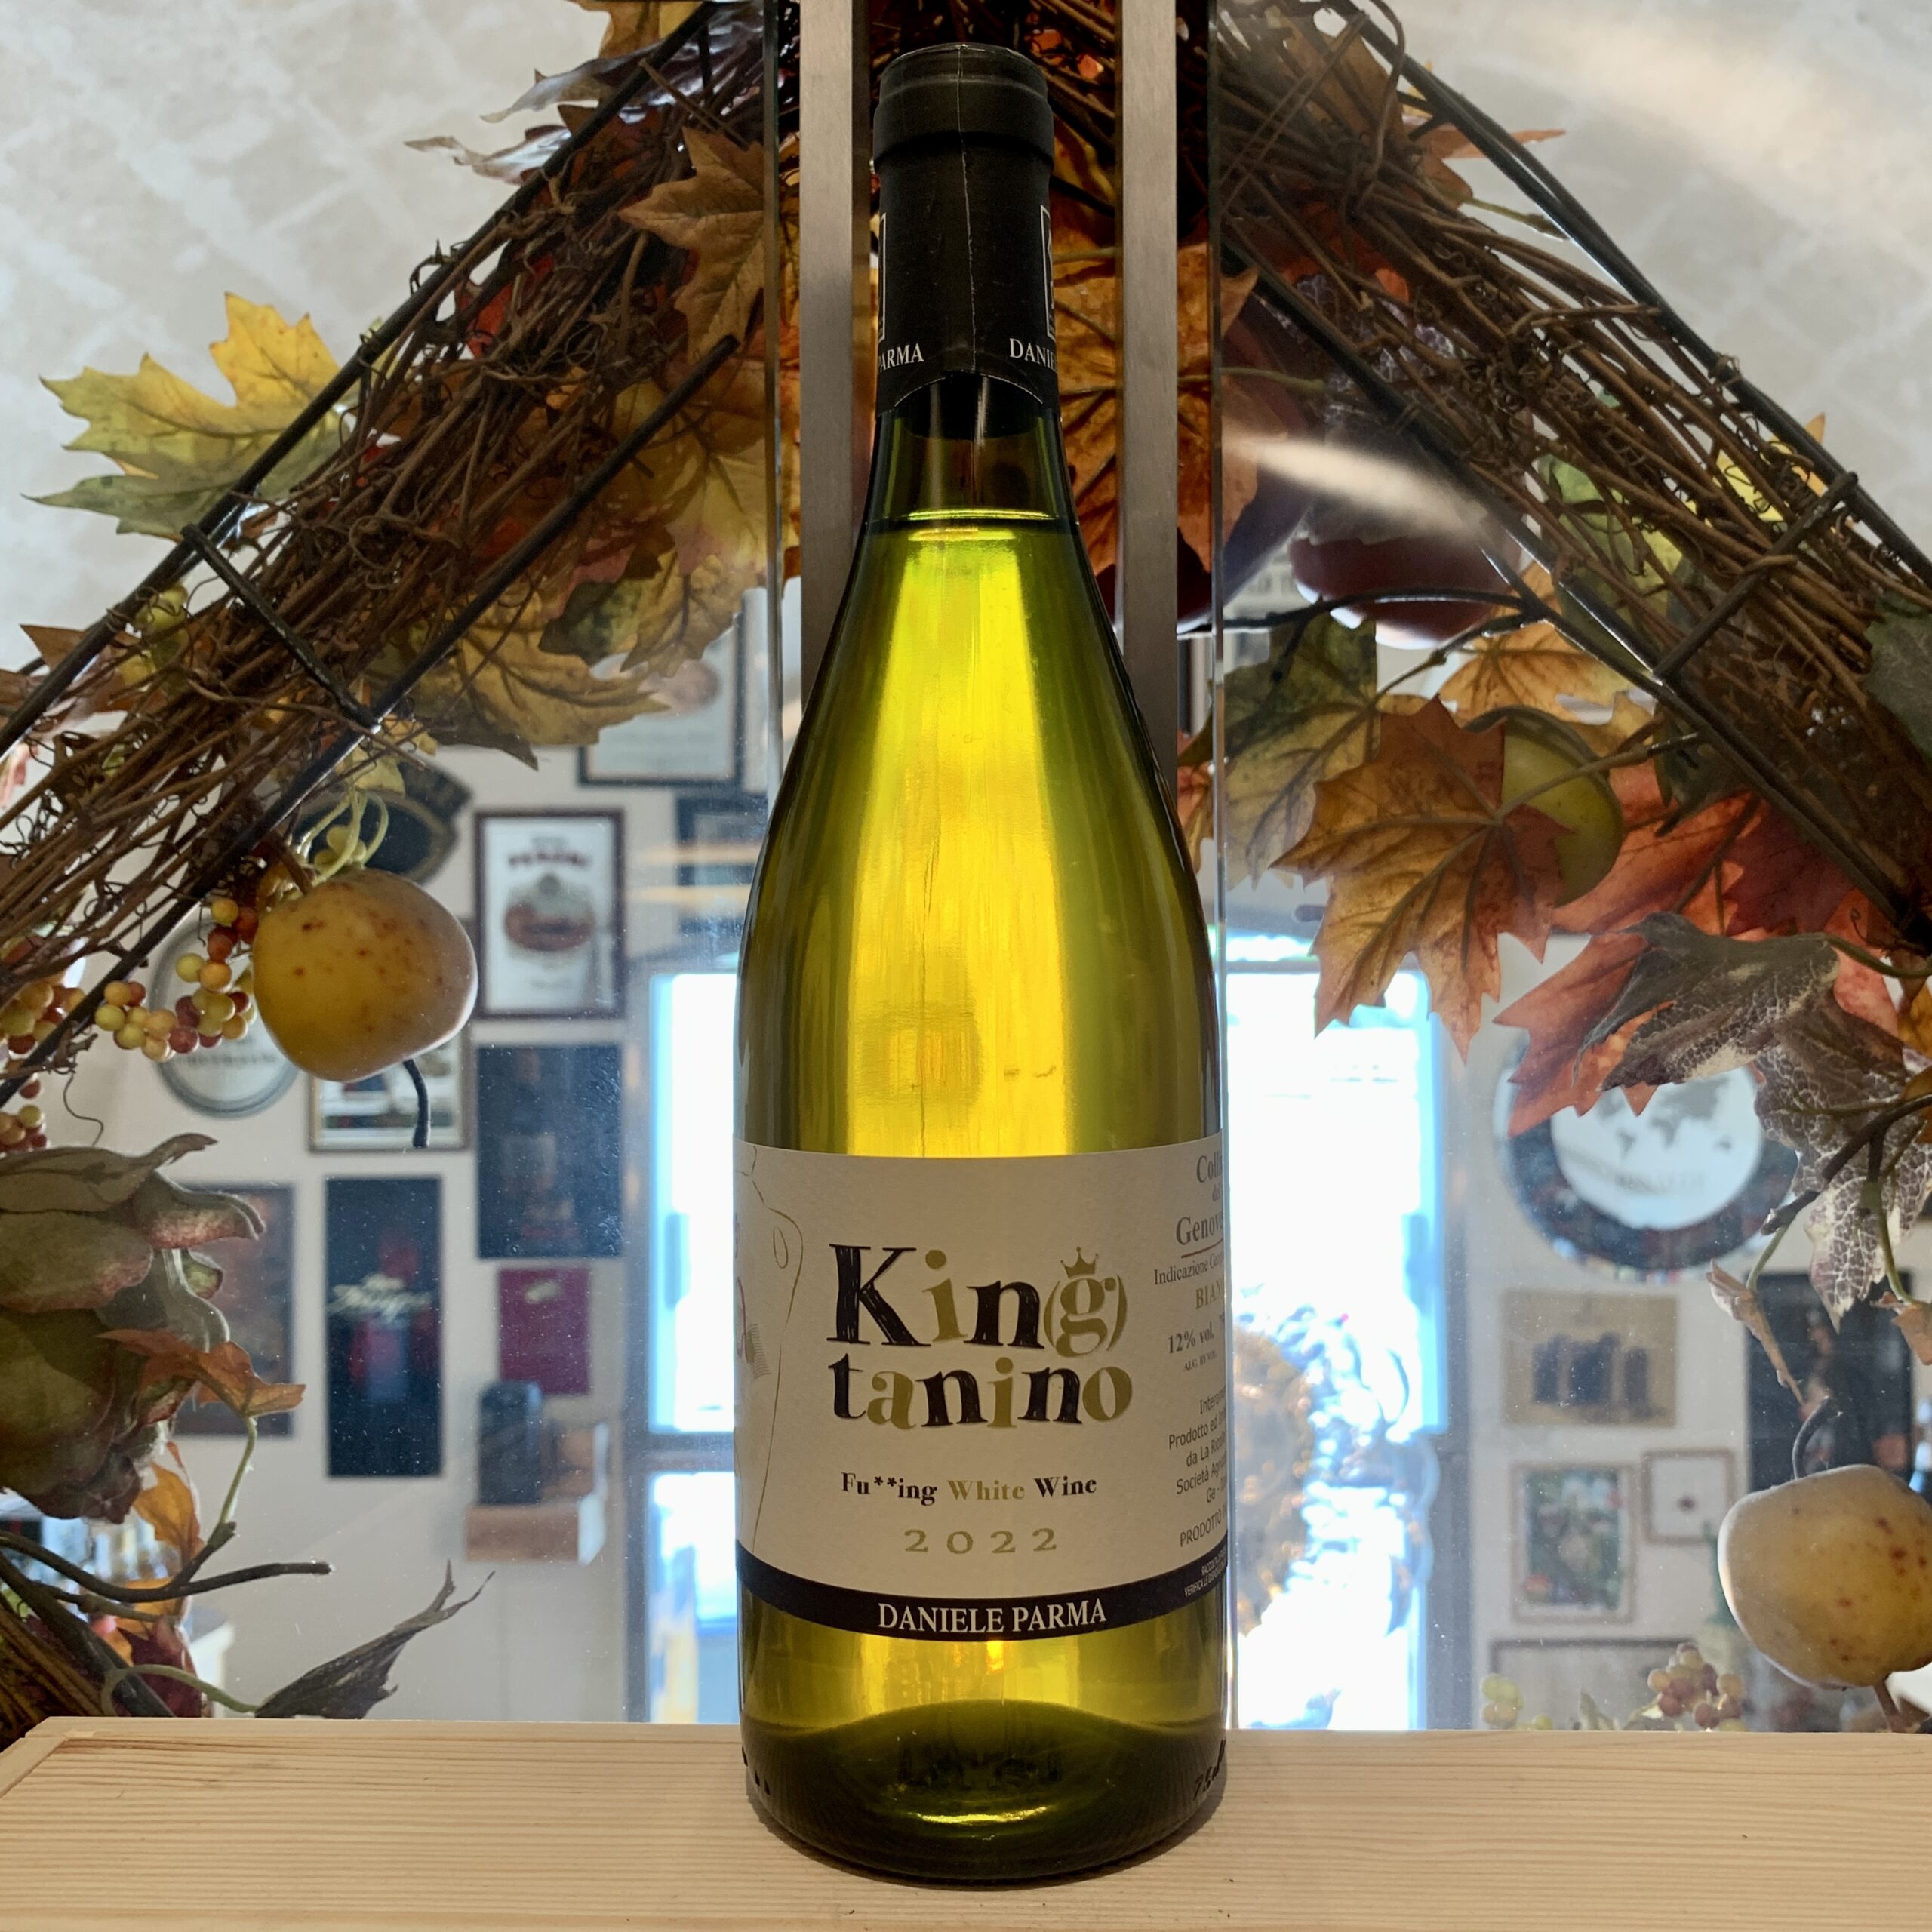 Kin(g)tanino Fu**ing White Wine La Ricolla Colline del Genovesato Bianco IGT 2022 “Tripla A”